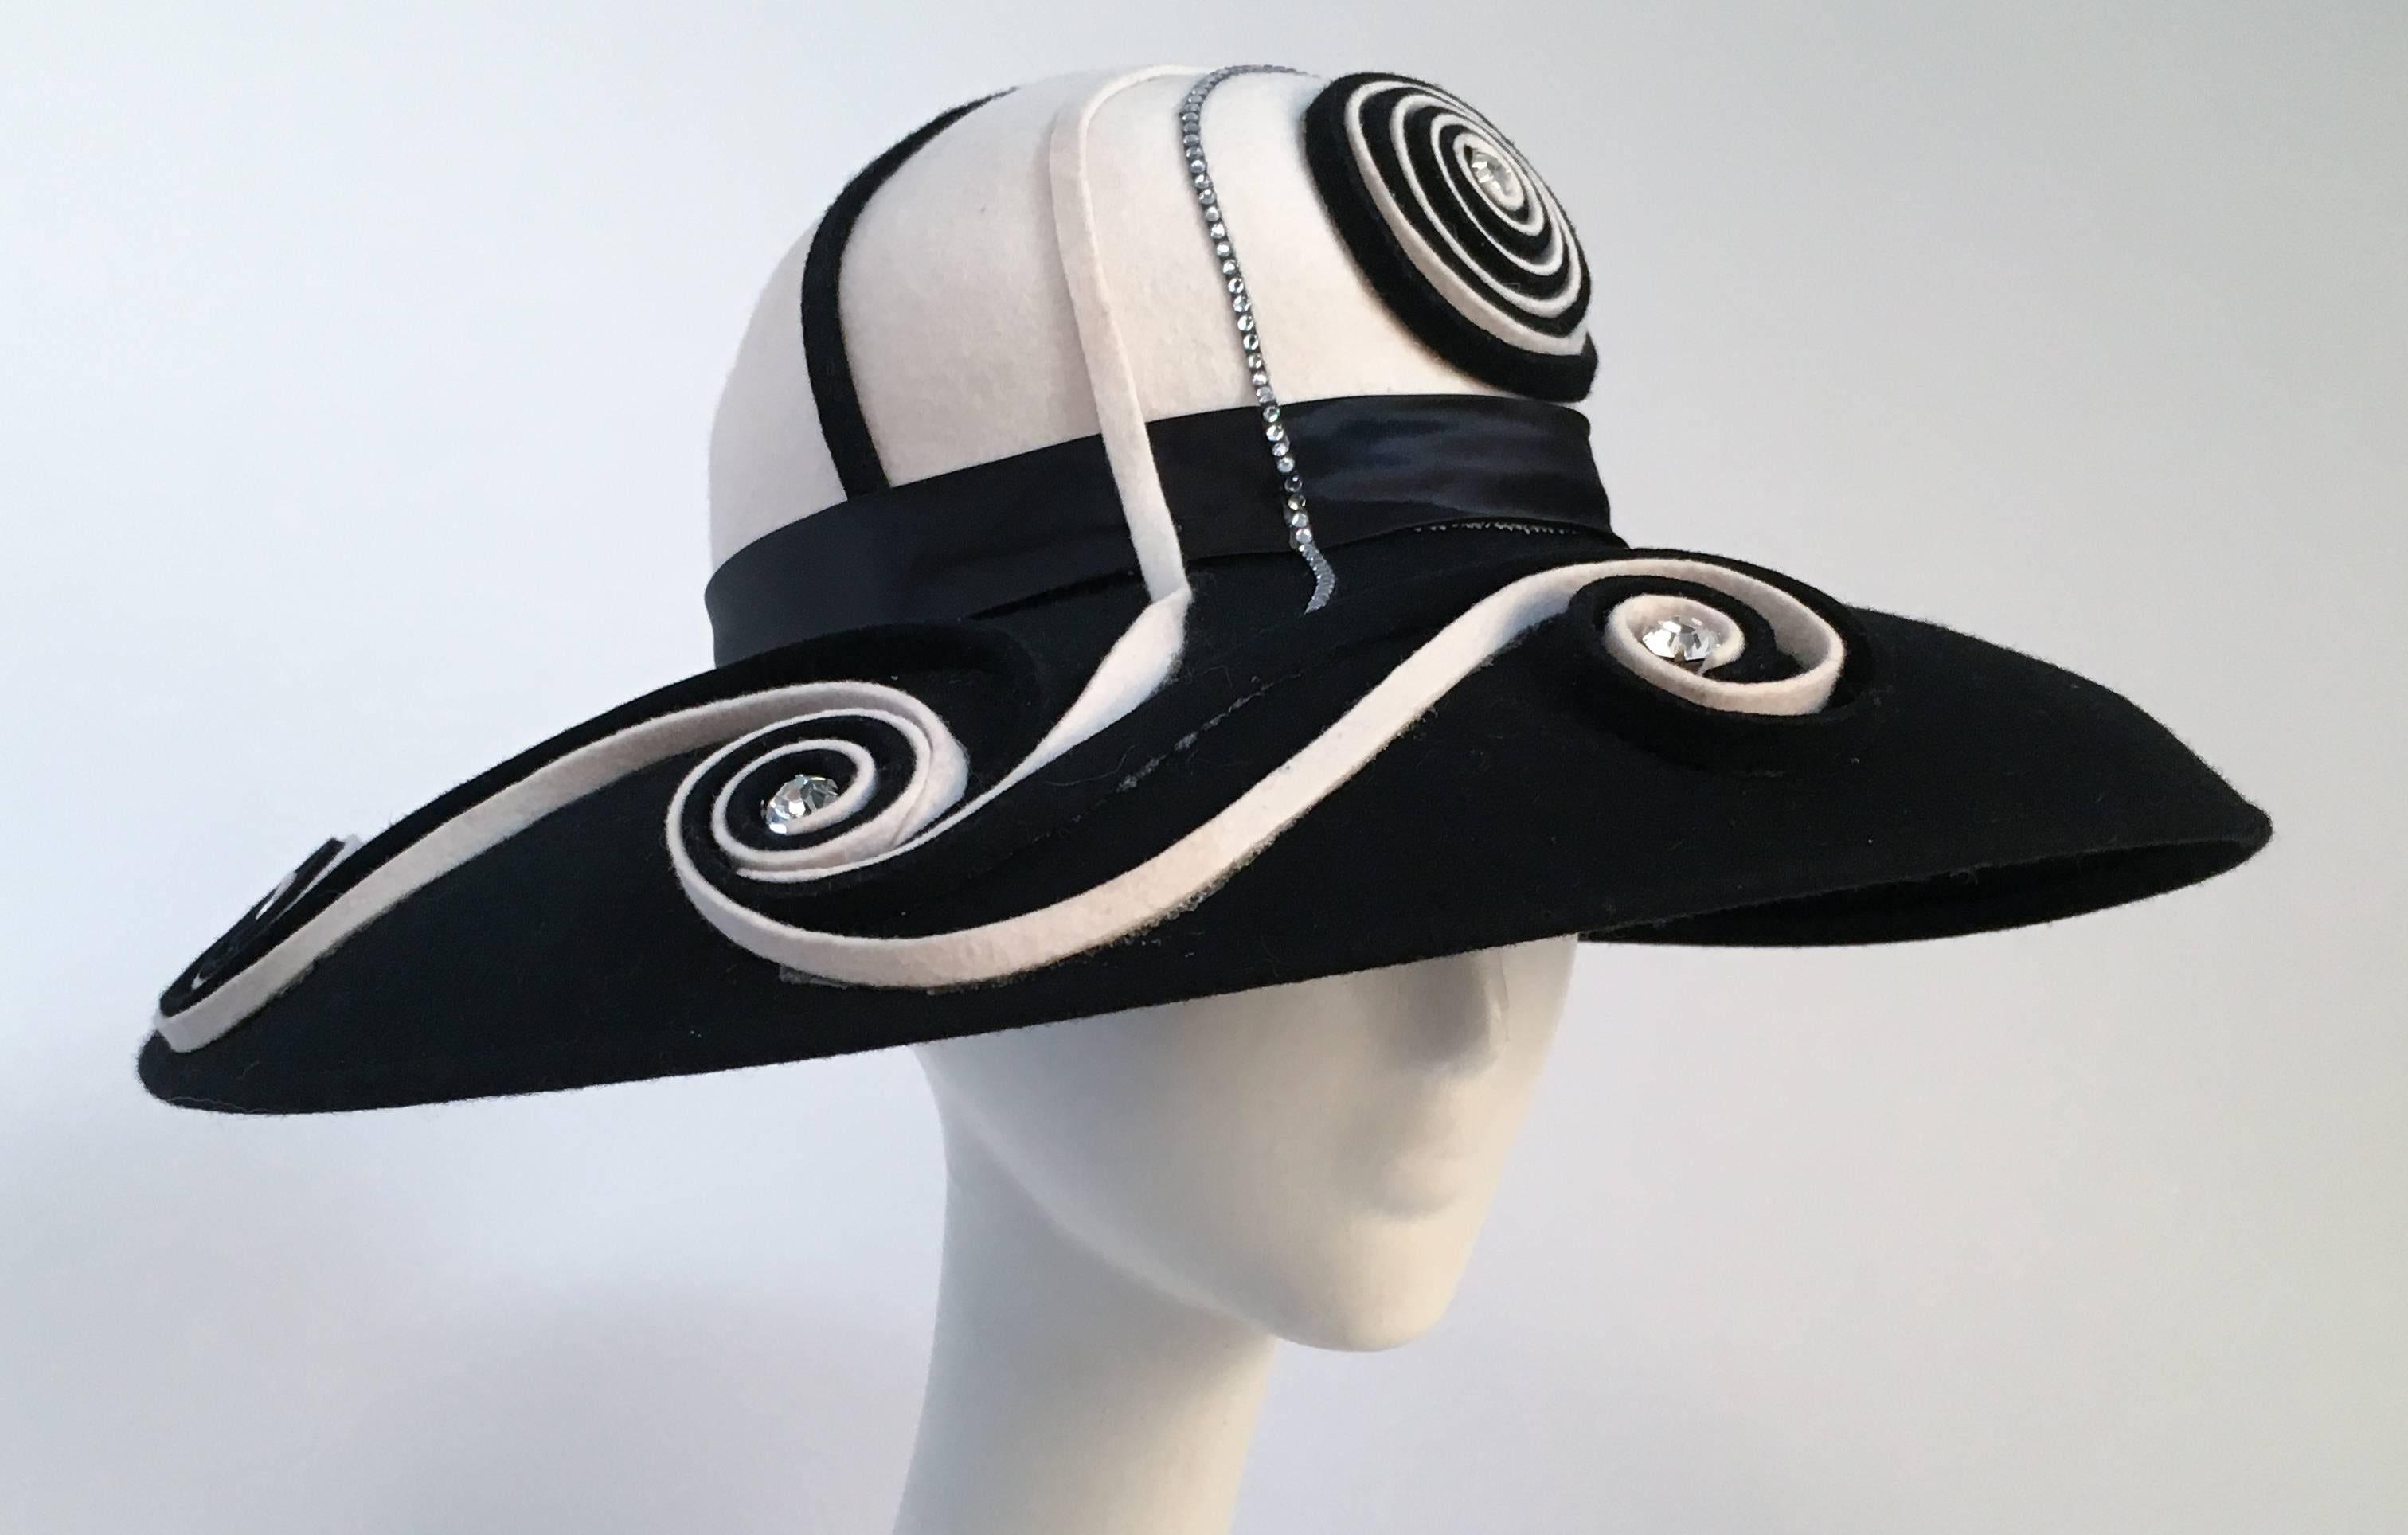 80s Black and White Wide Brim Hat w/ Spiral Detail. Rhinestones add eye-catching detail to already striking black and white spirals. 